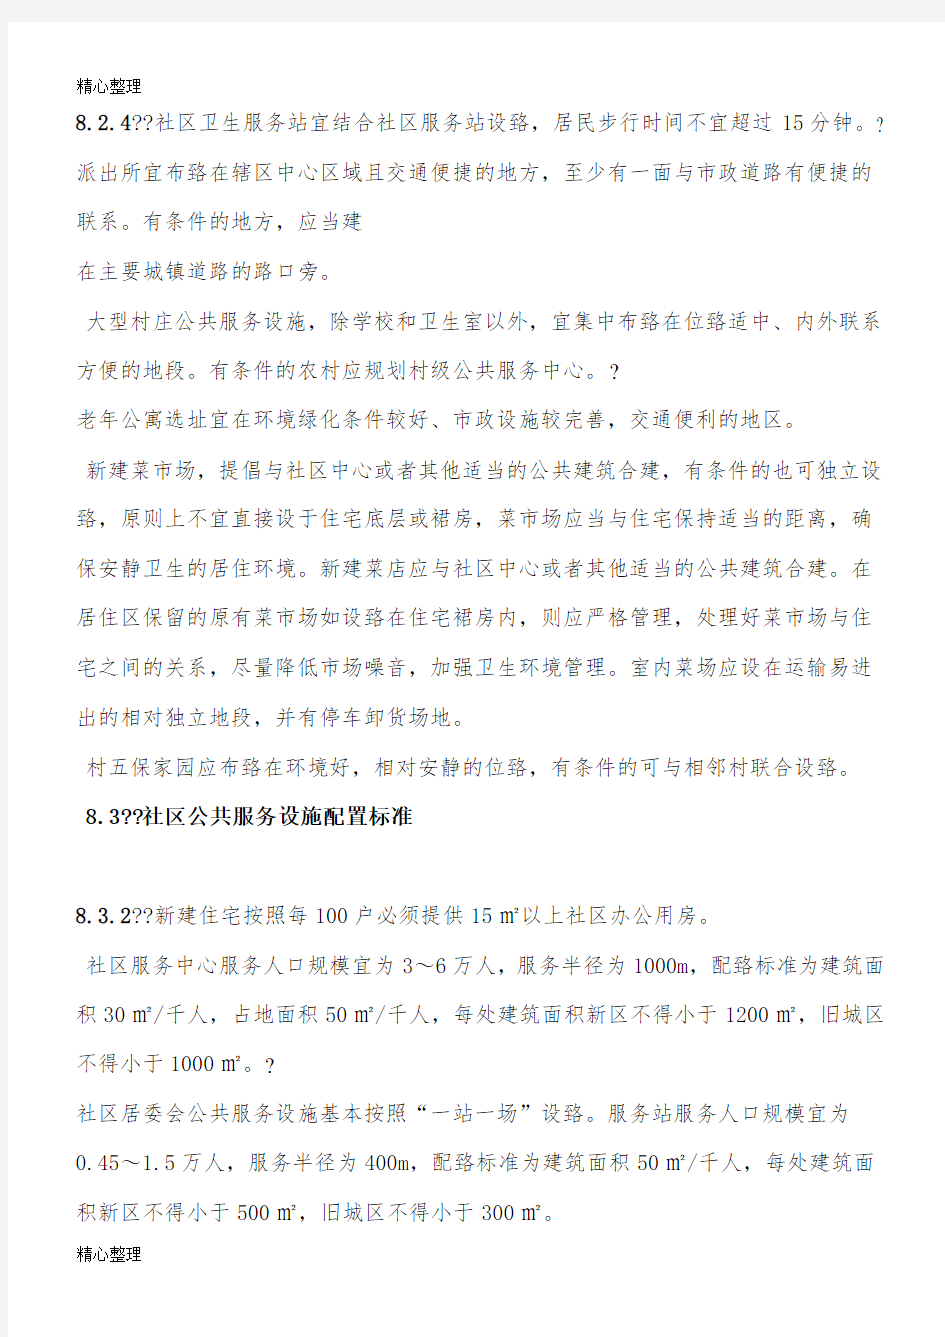 重庆市社区公共服务设施规划布局与设置标准